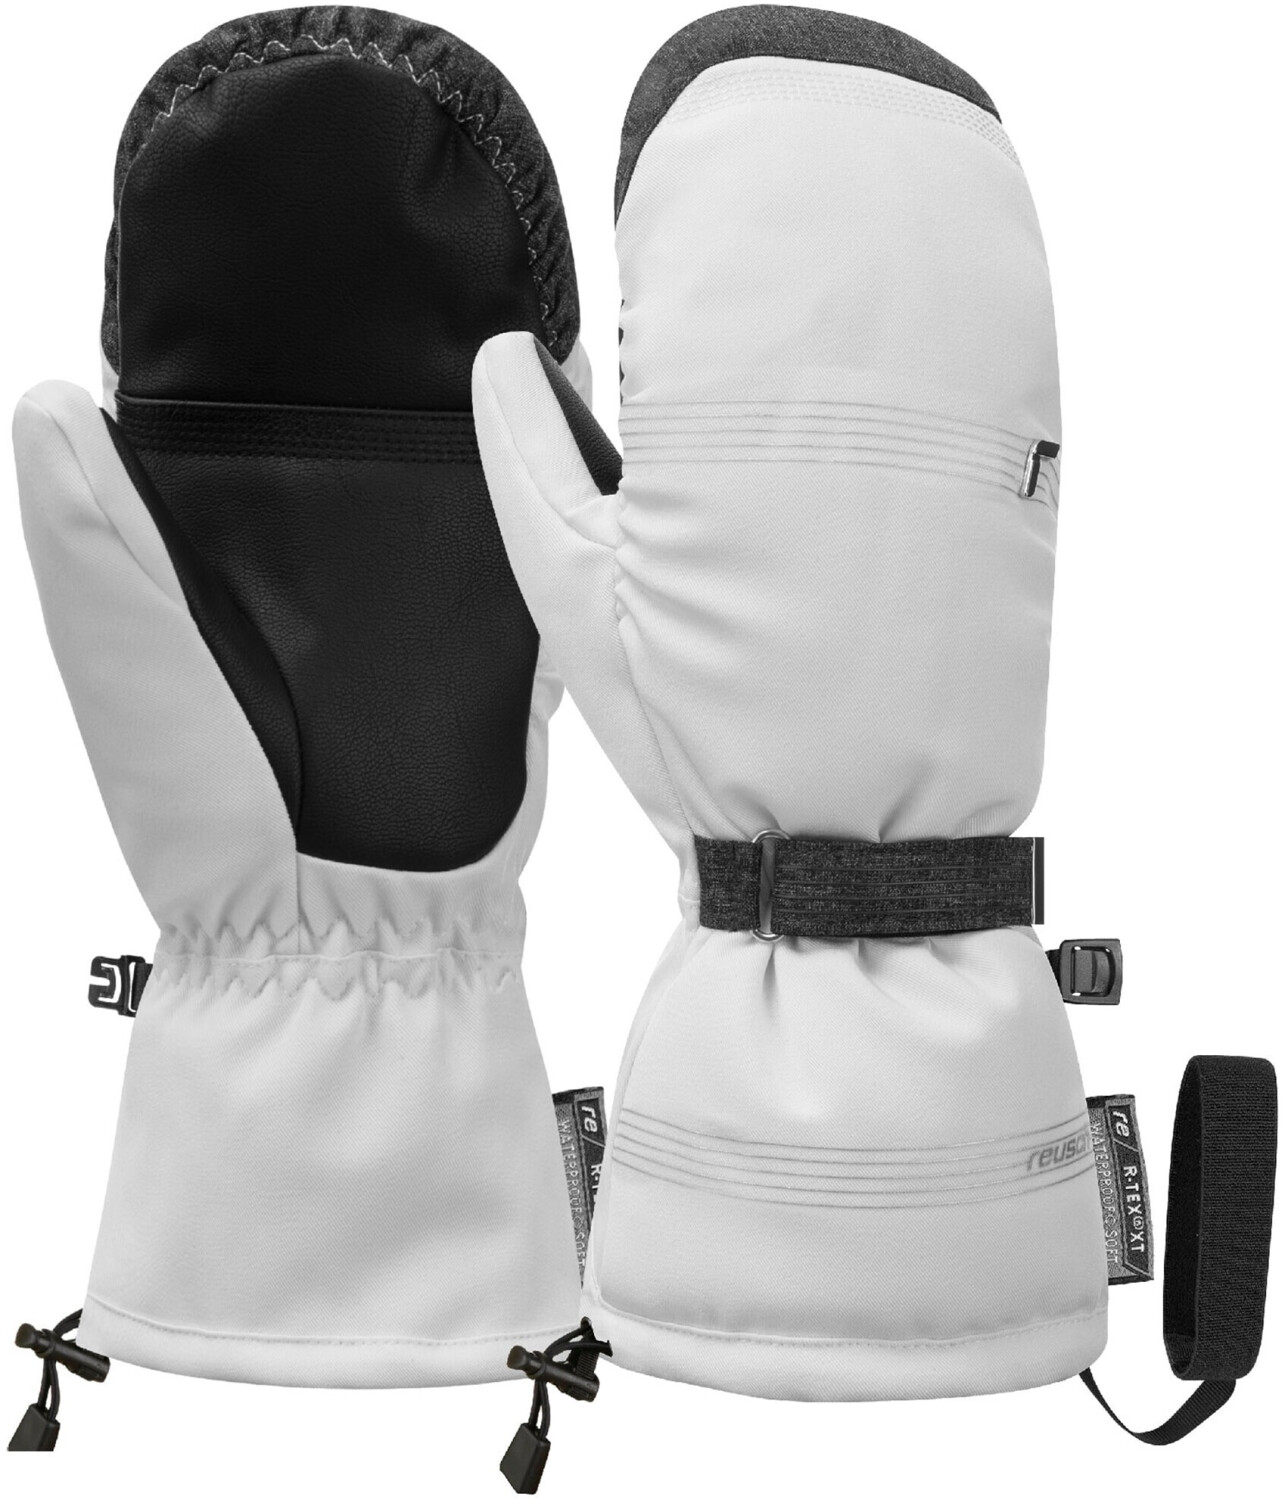 Reusch Cozy R-TEX XT Mitten (6231558) white/black melange ab 70,30 € |  Preisvergleich bei